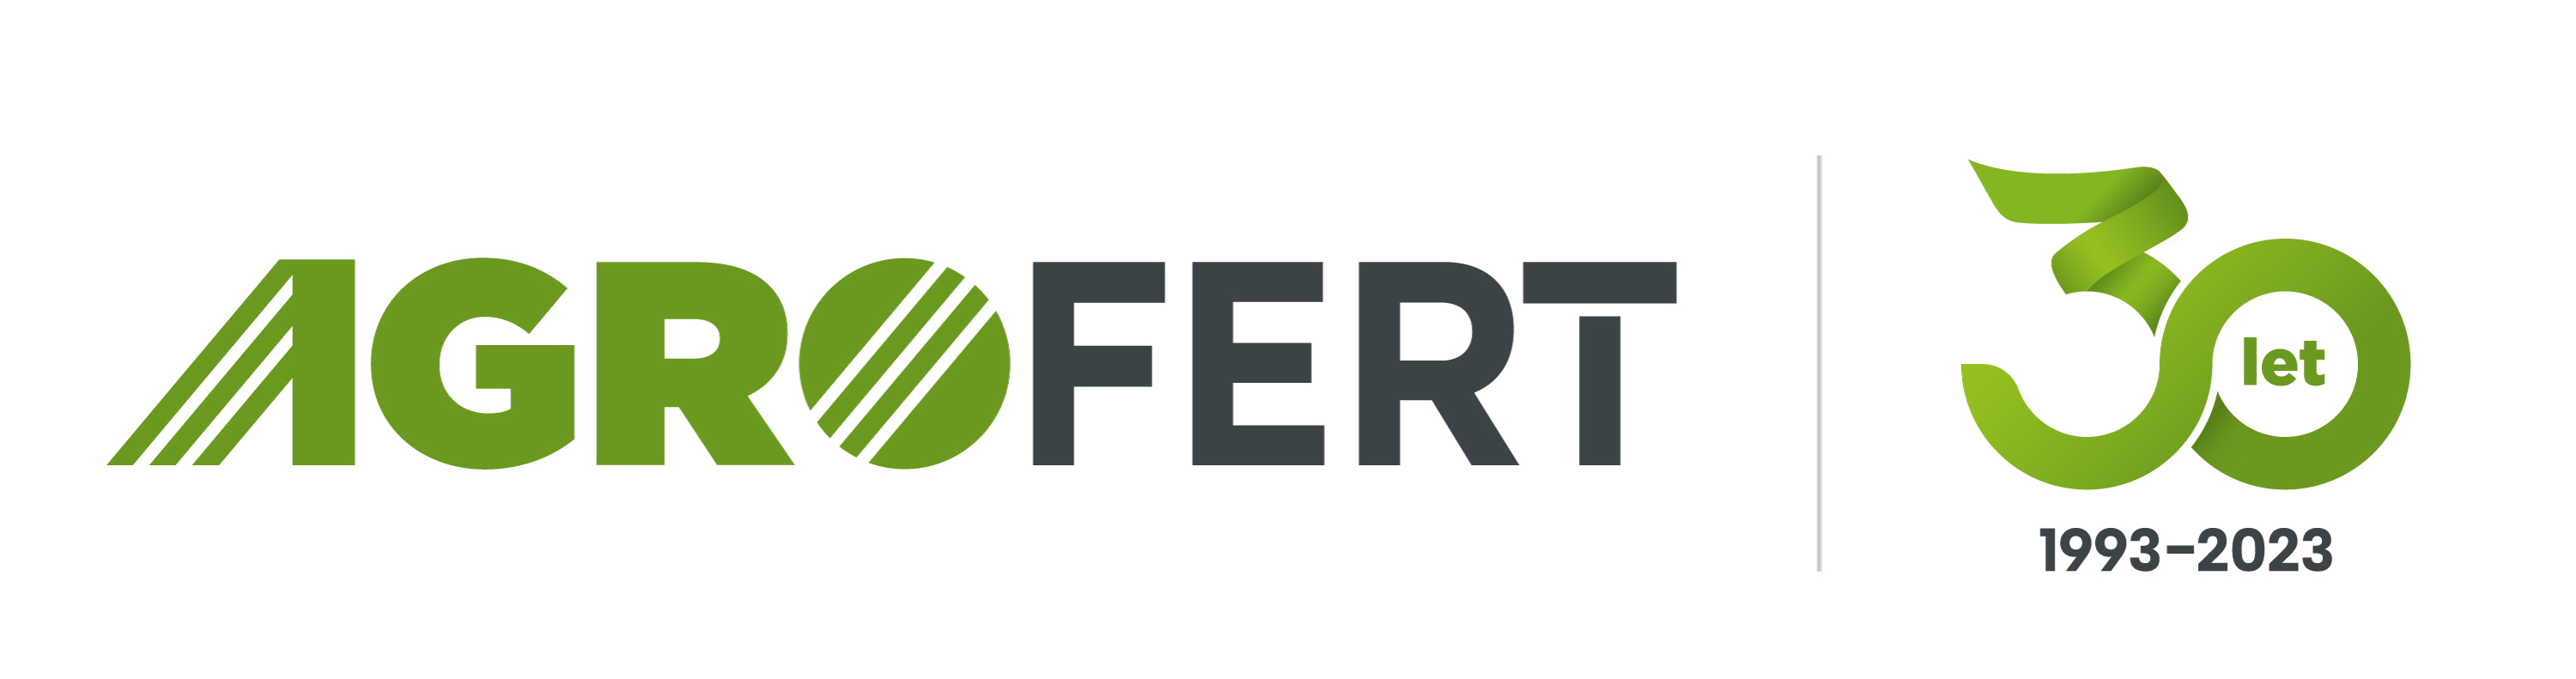 AGROFERT 30 let - logo 